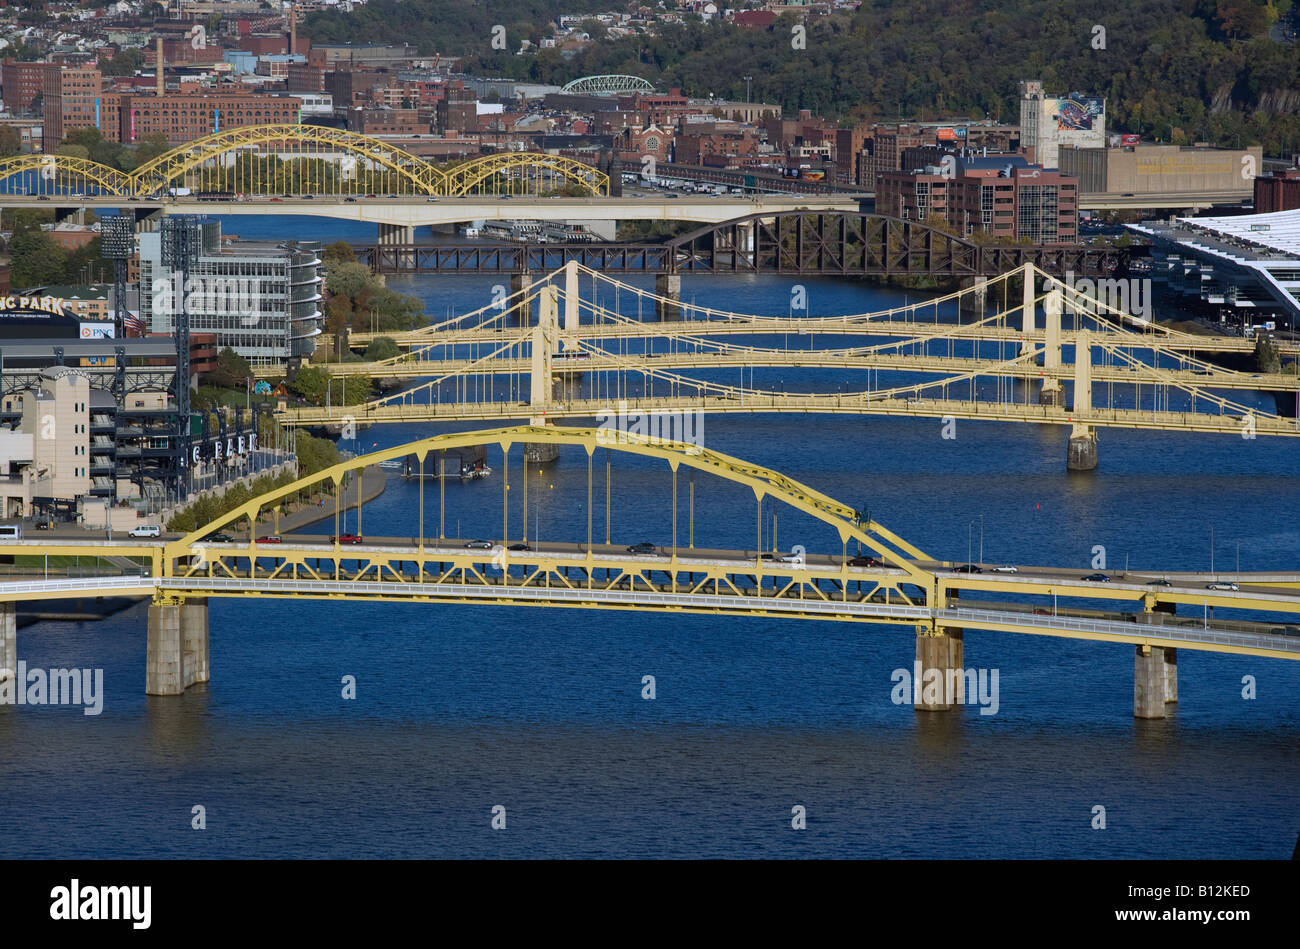 ALLEGHENY ponti sul fiume centro di Pittsburgh Pennsylvania USA Foto Stock